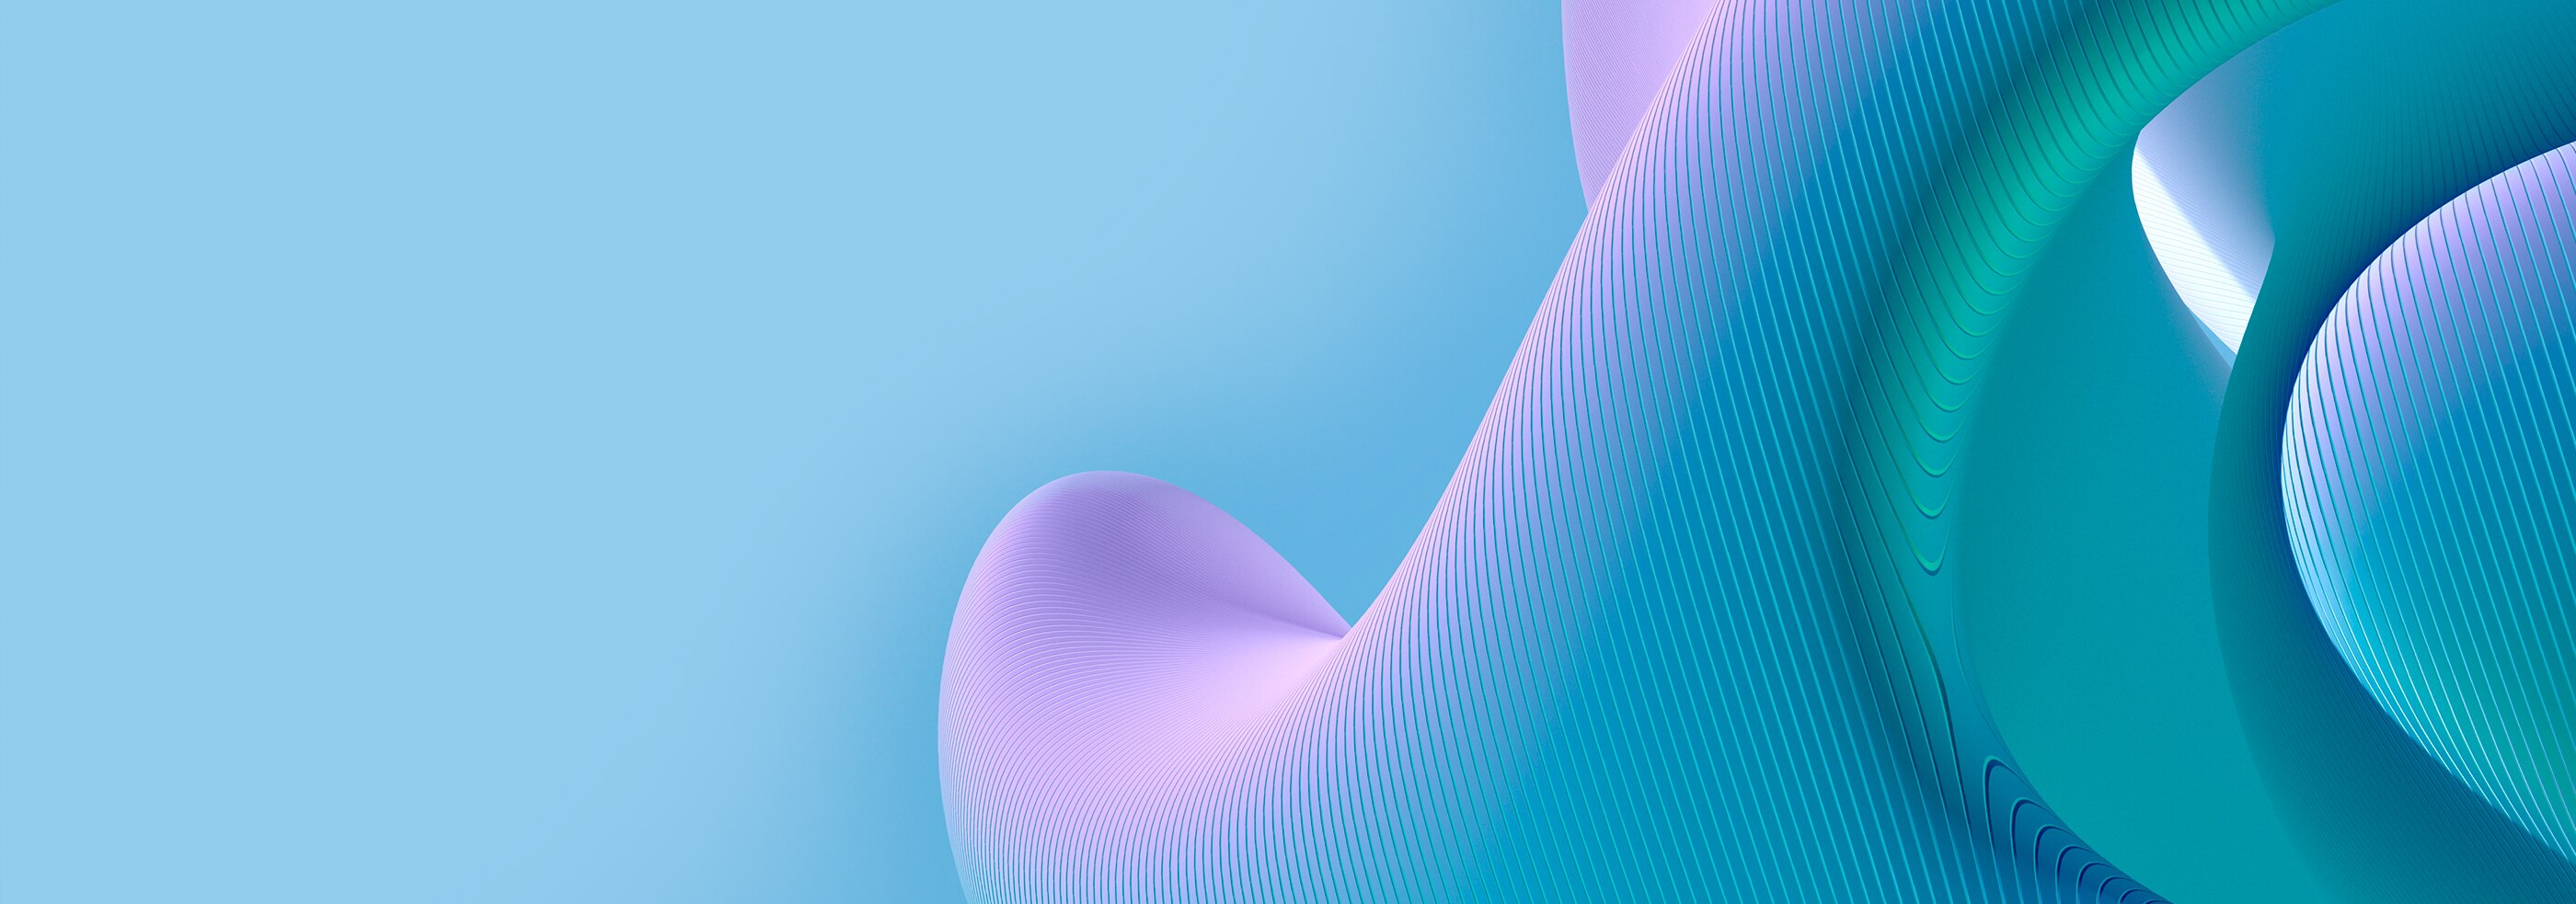 蓝色和紫色表面上的 3D 曲线图案